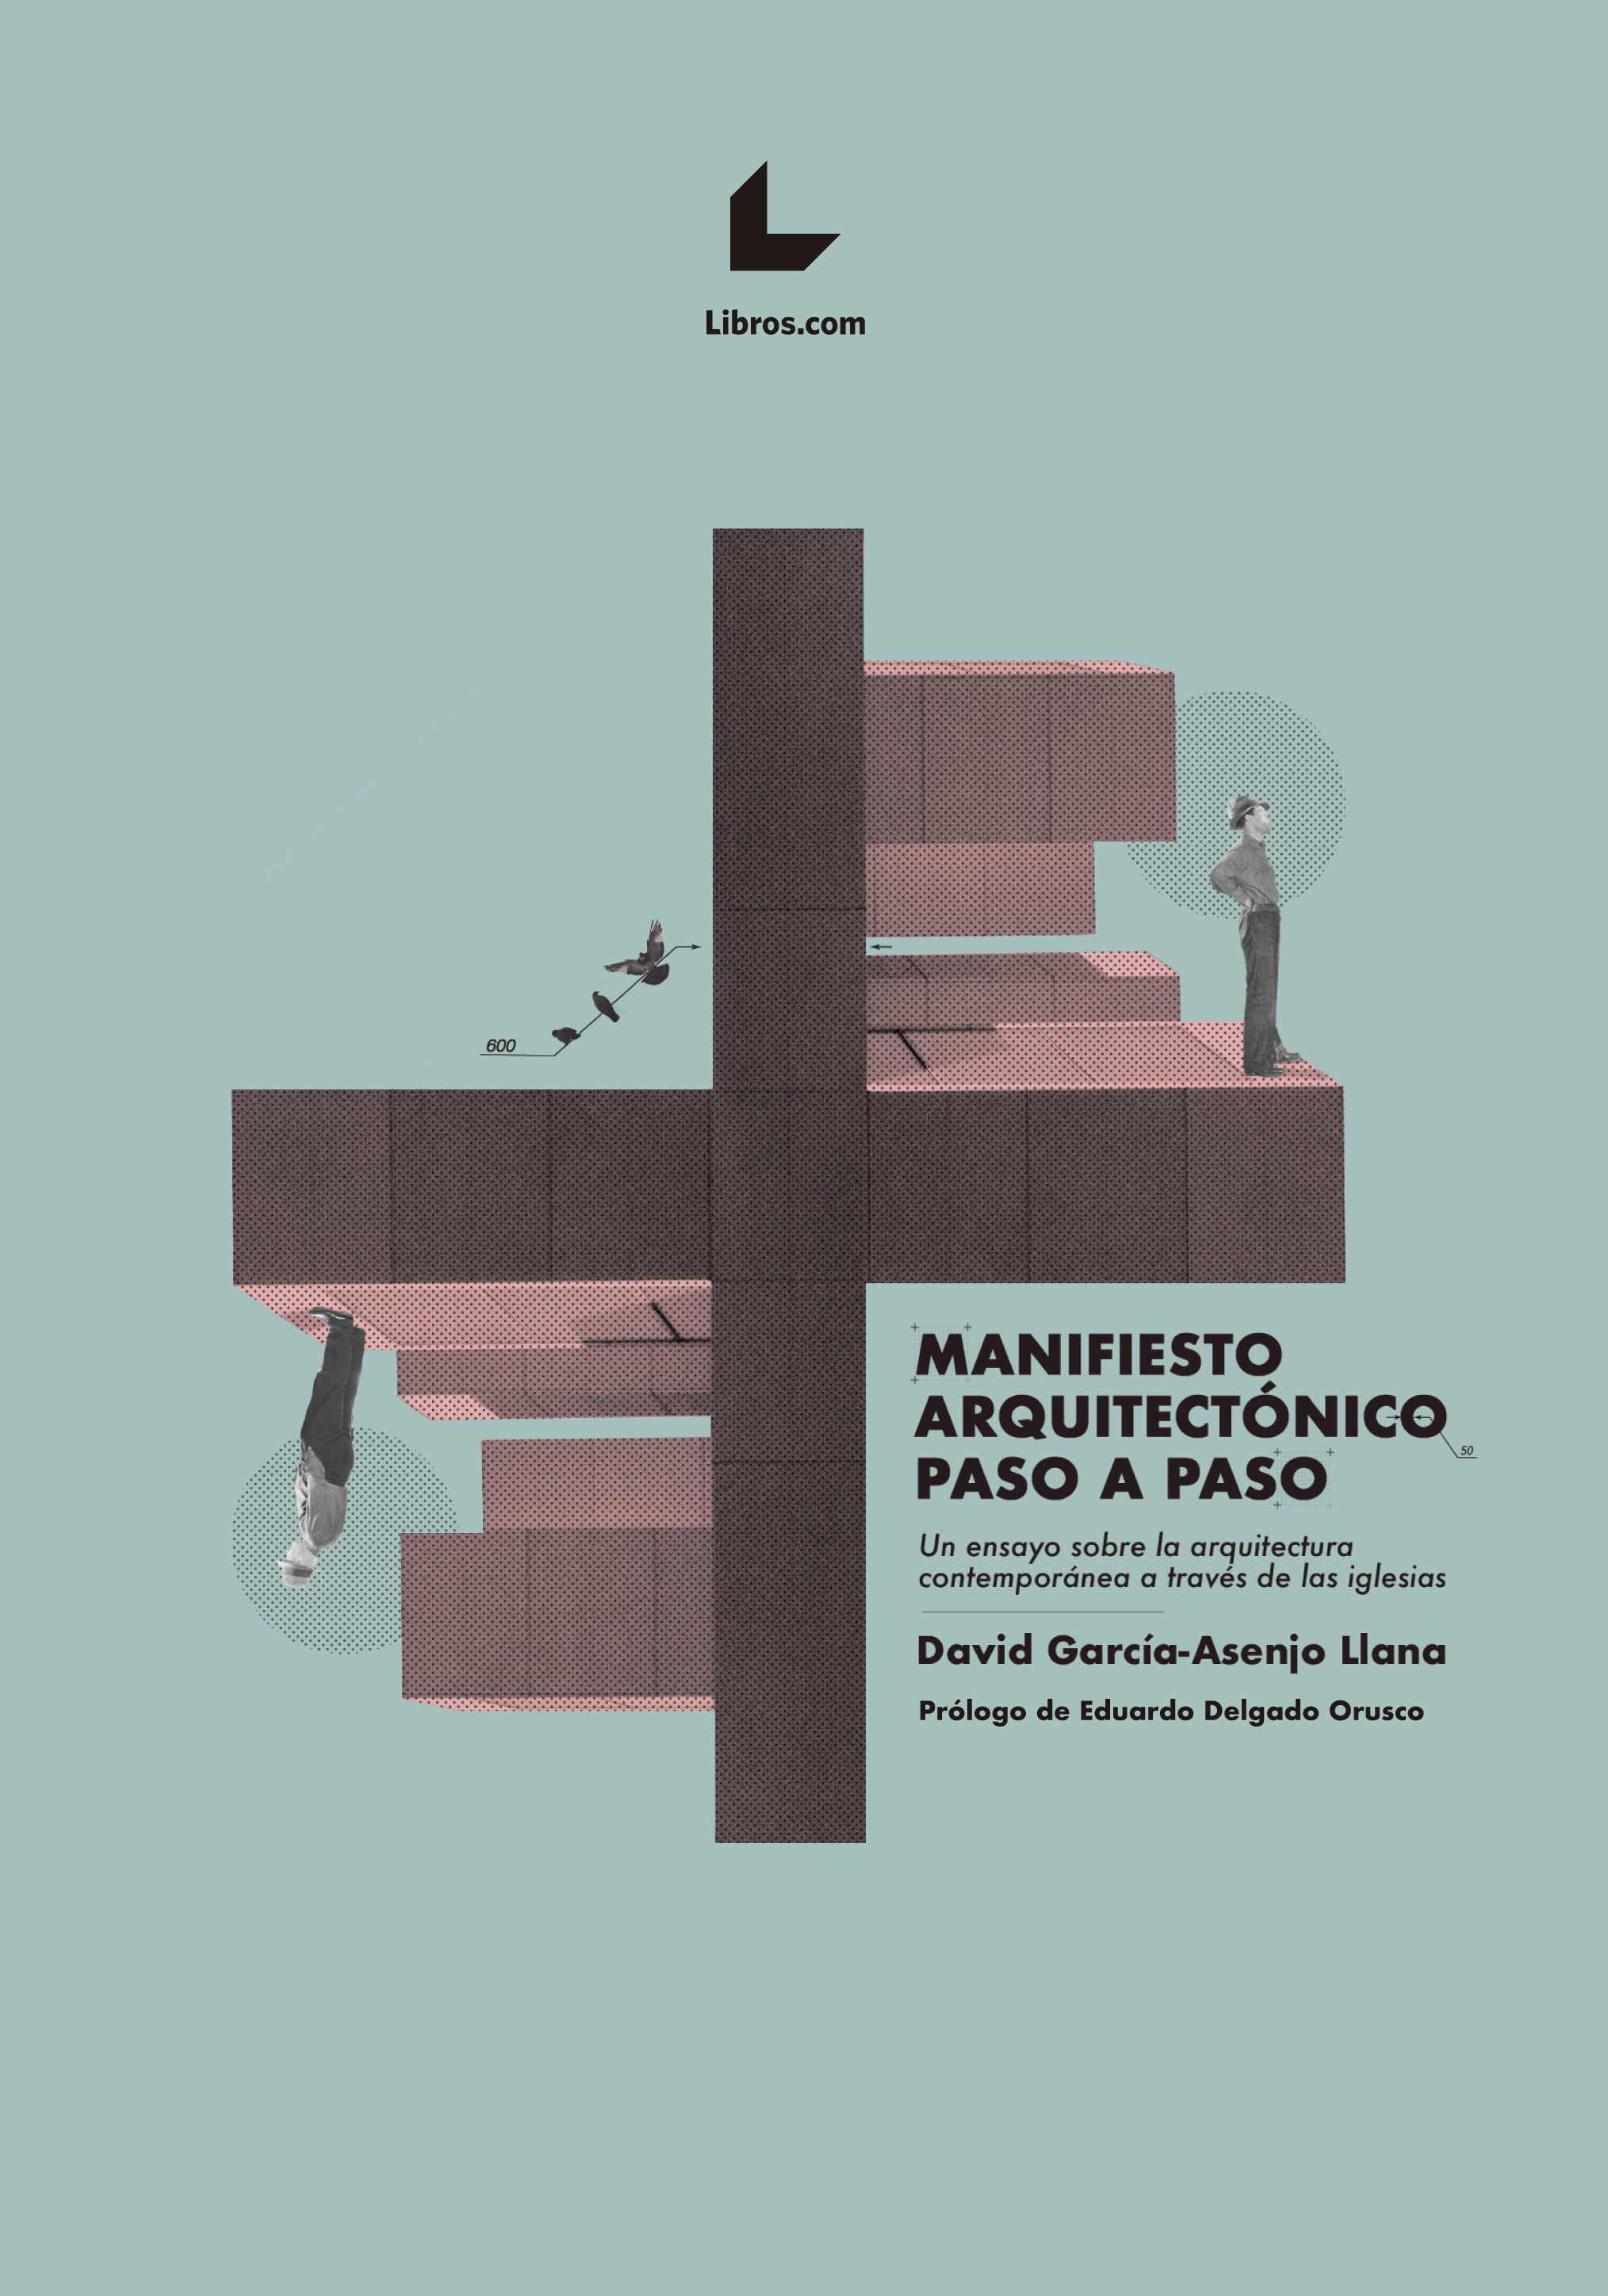 Manifiesto arquitectónico paso a paso. Un ensayo sobre la arquitectura contemporánea a través de las iglesias.